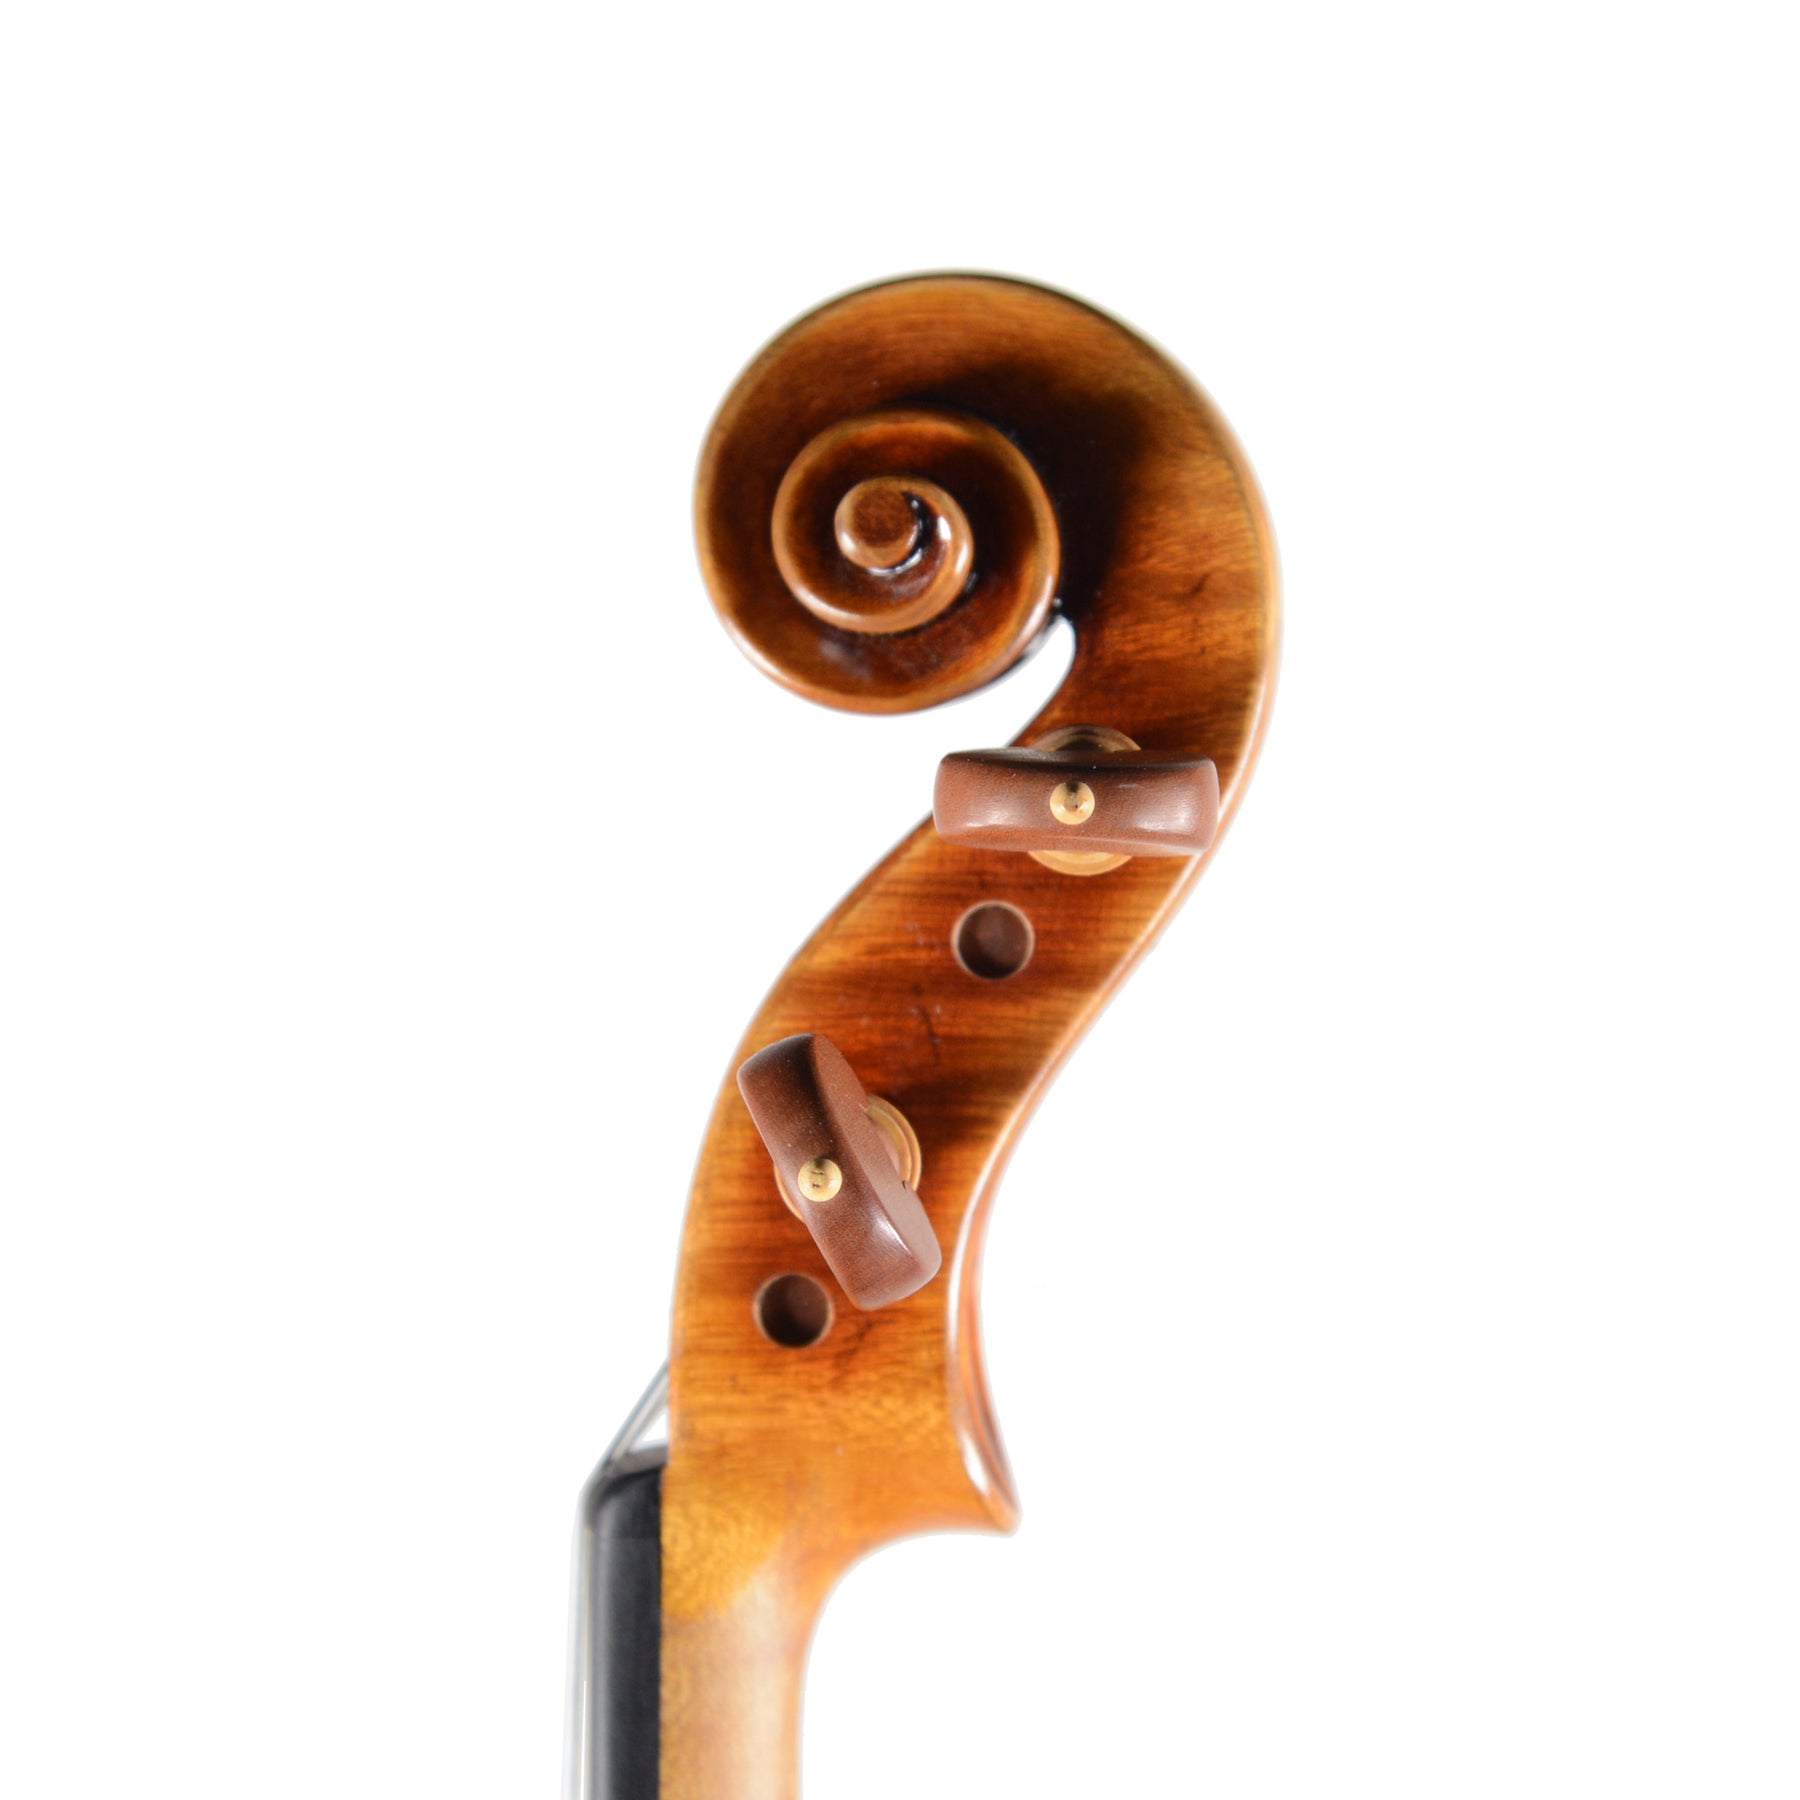 Ming Jiang Zhu 909 Violin